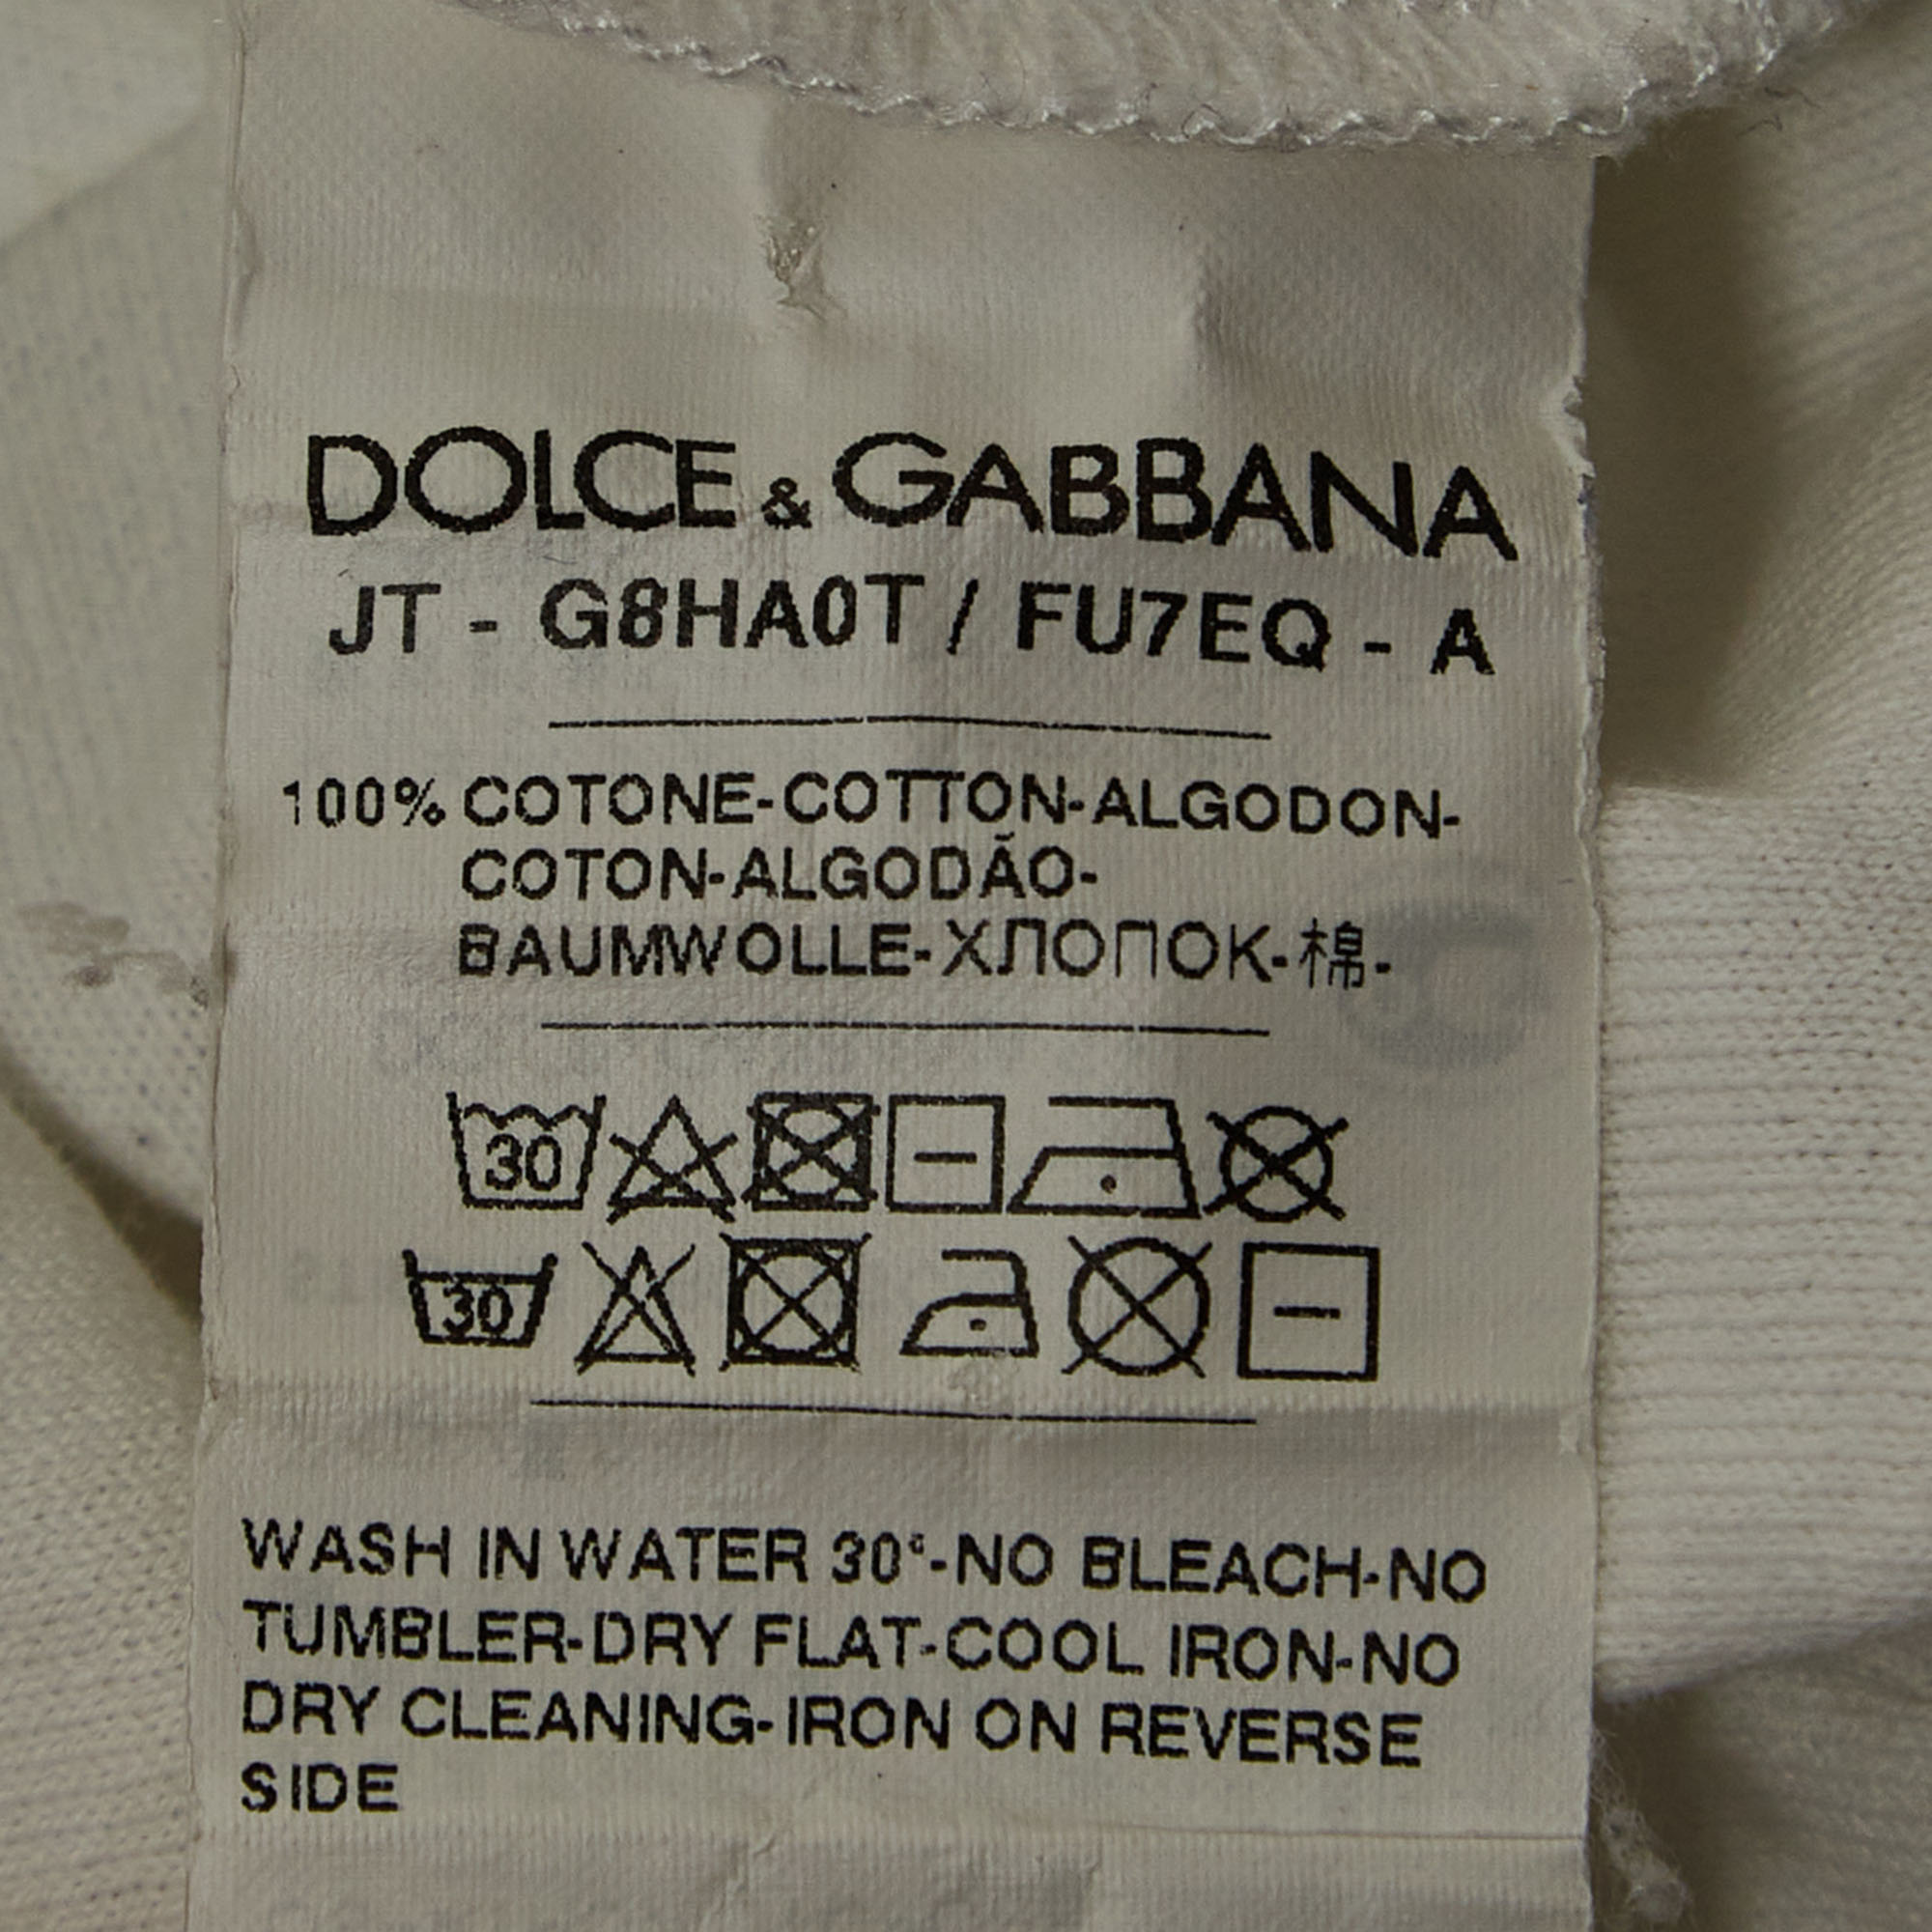 Dolce & Gabbana White Cotton V-Neck T-Shirt M